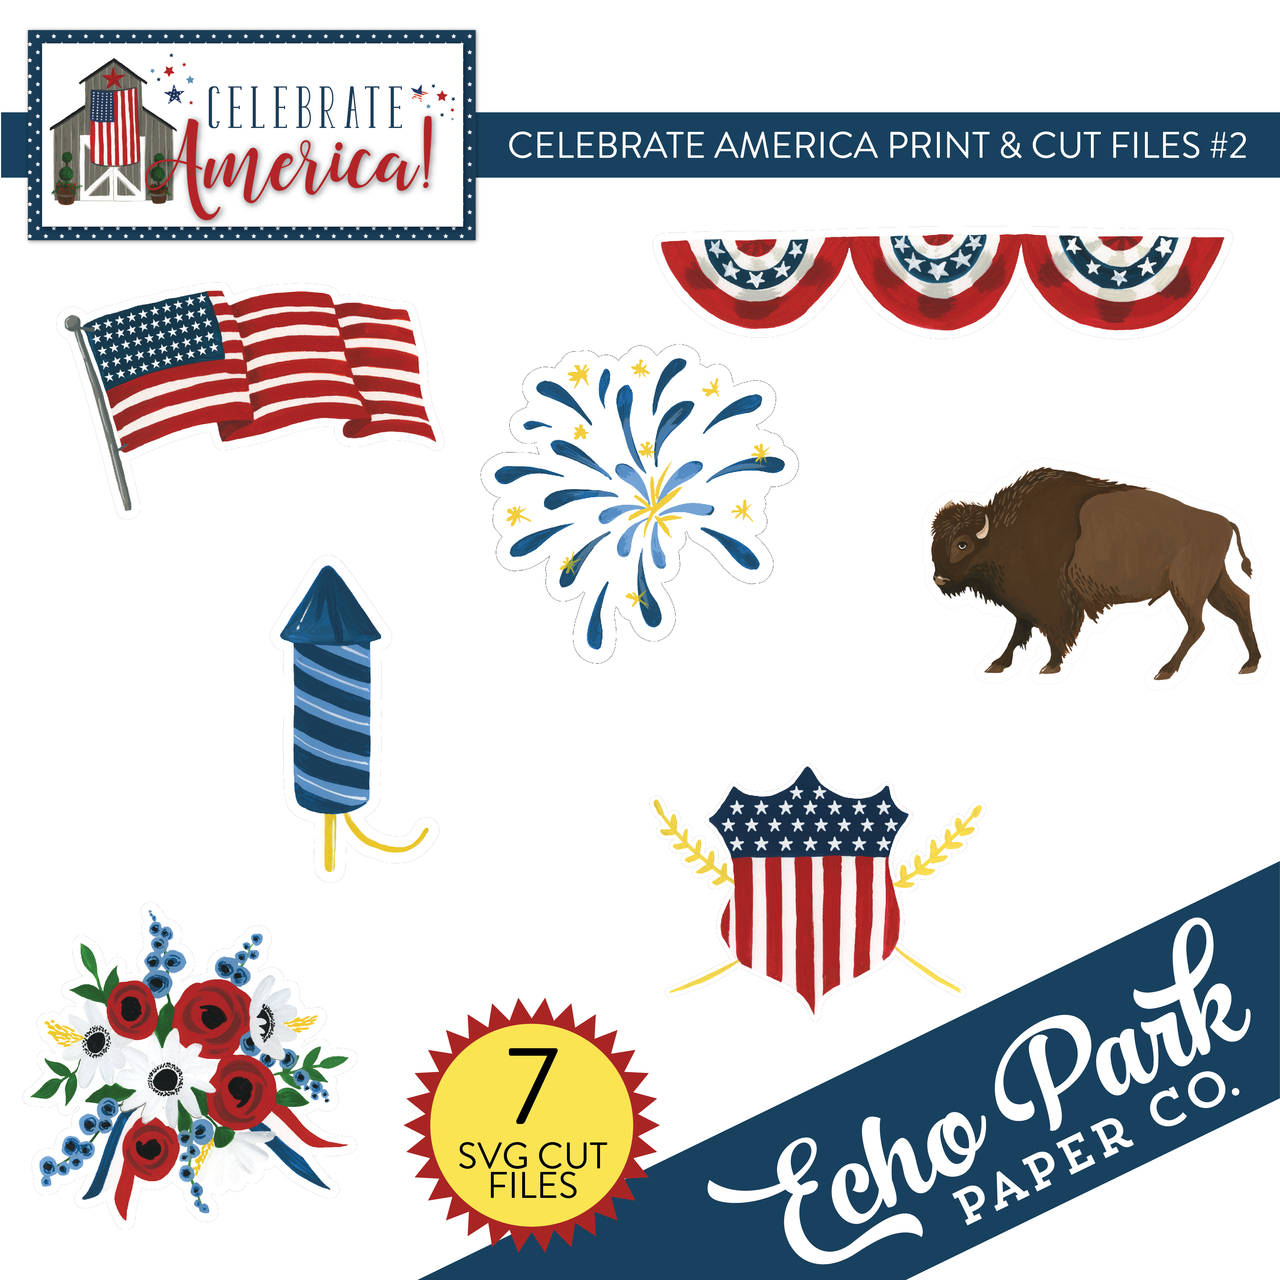 Celebrate America Print & Cut Files #2